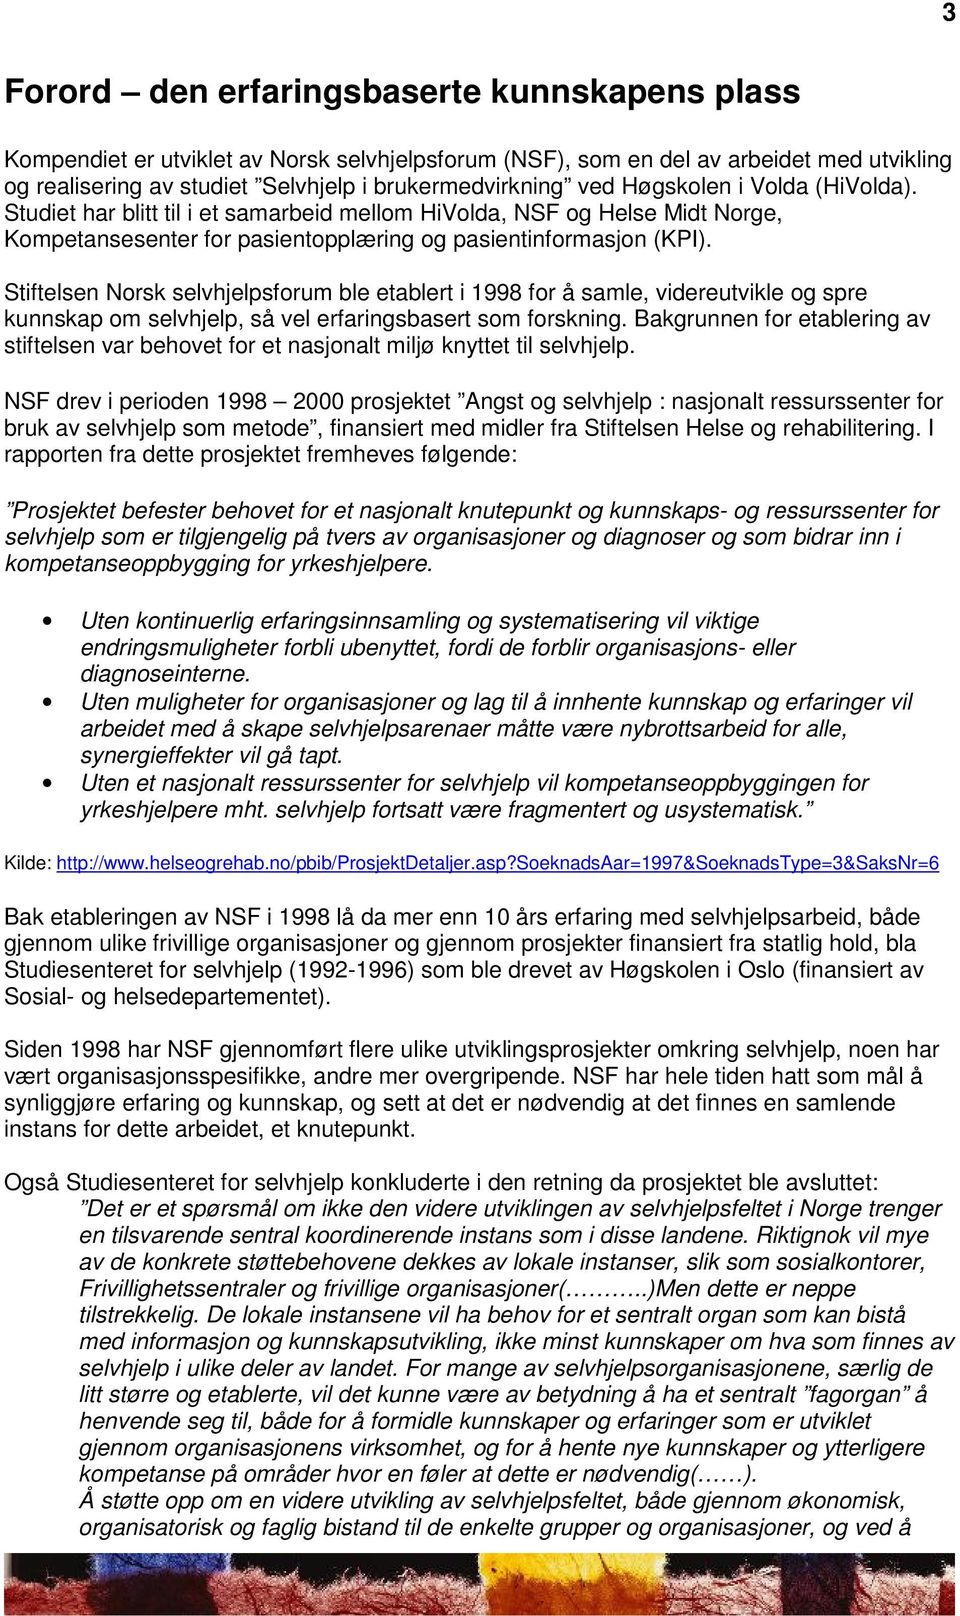 Stiftelsen Norsk selvhjelpsforum ble etablert i 1998 for å samle, videreutvikle og spre kunnskap om selvhjelp, så vel erfaringsbasert som forskning.